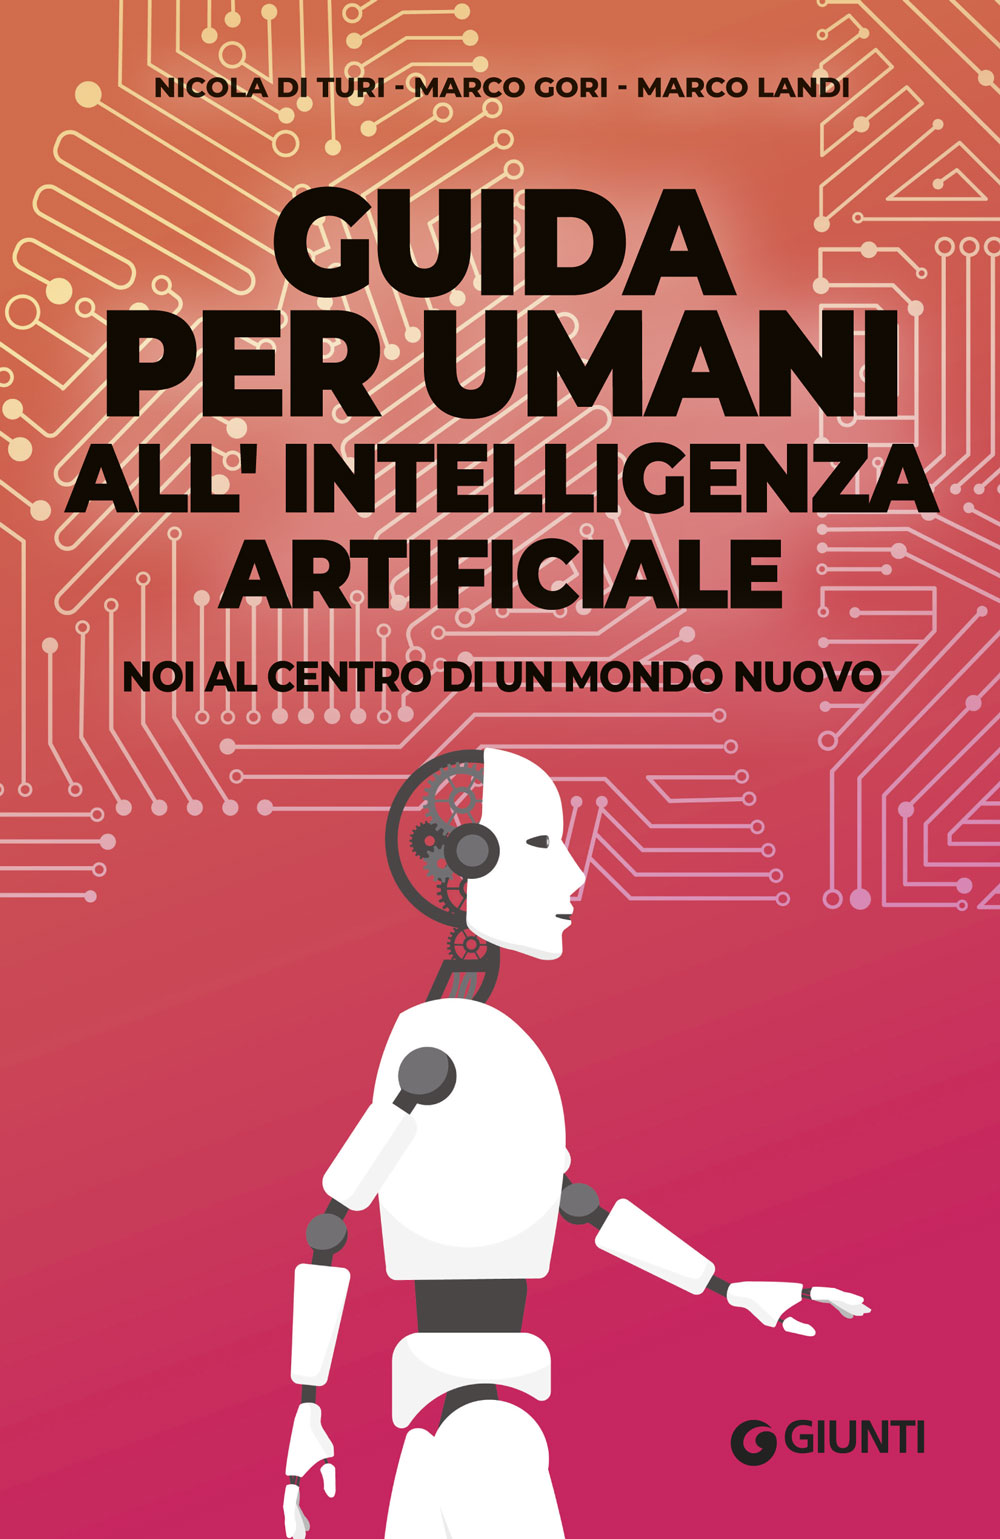 Image of Guida per umani all'intelligenza artificiale. Noi al centro di un mondo nuovo